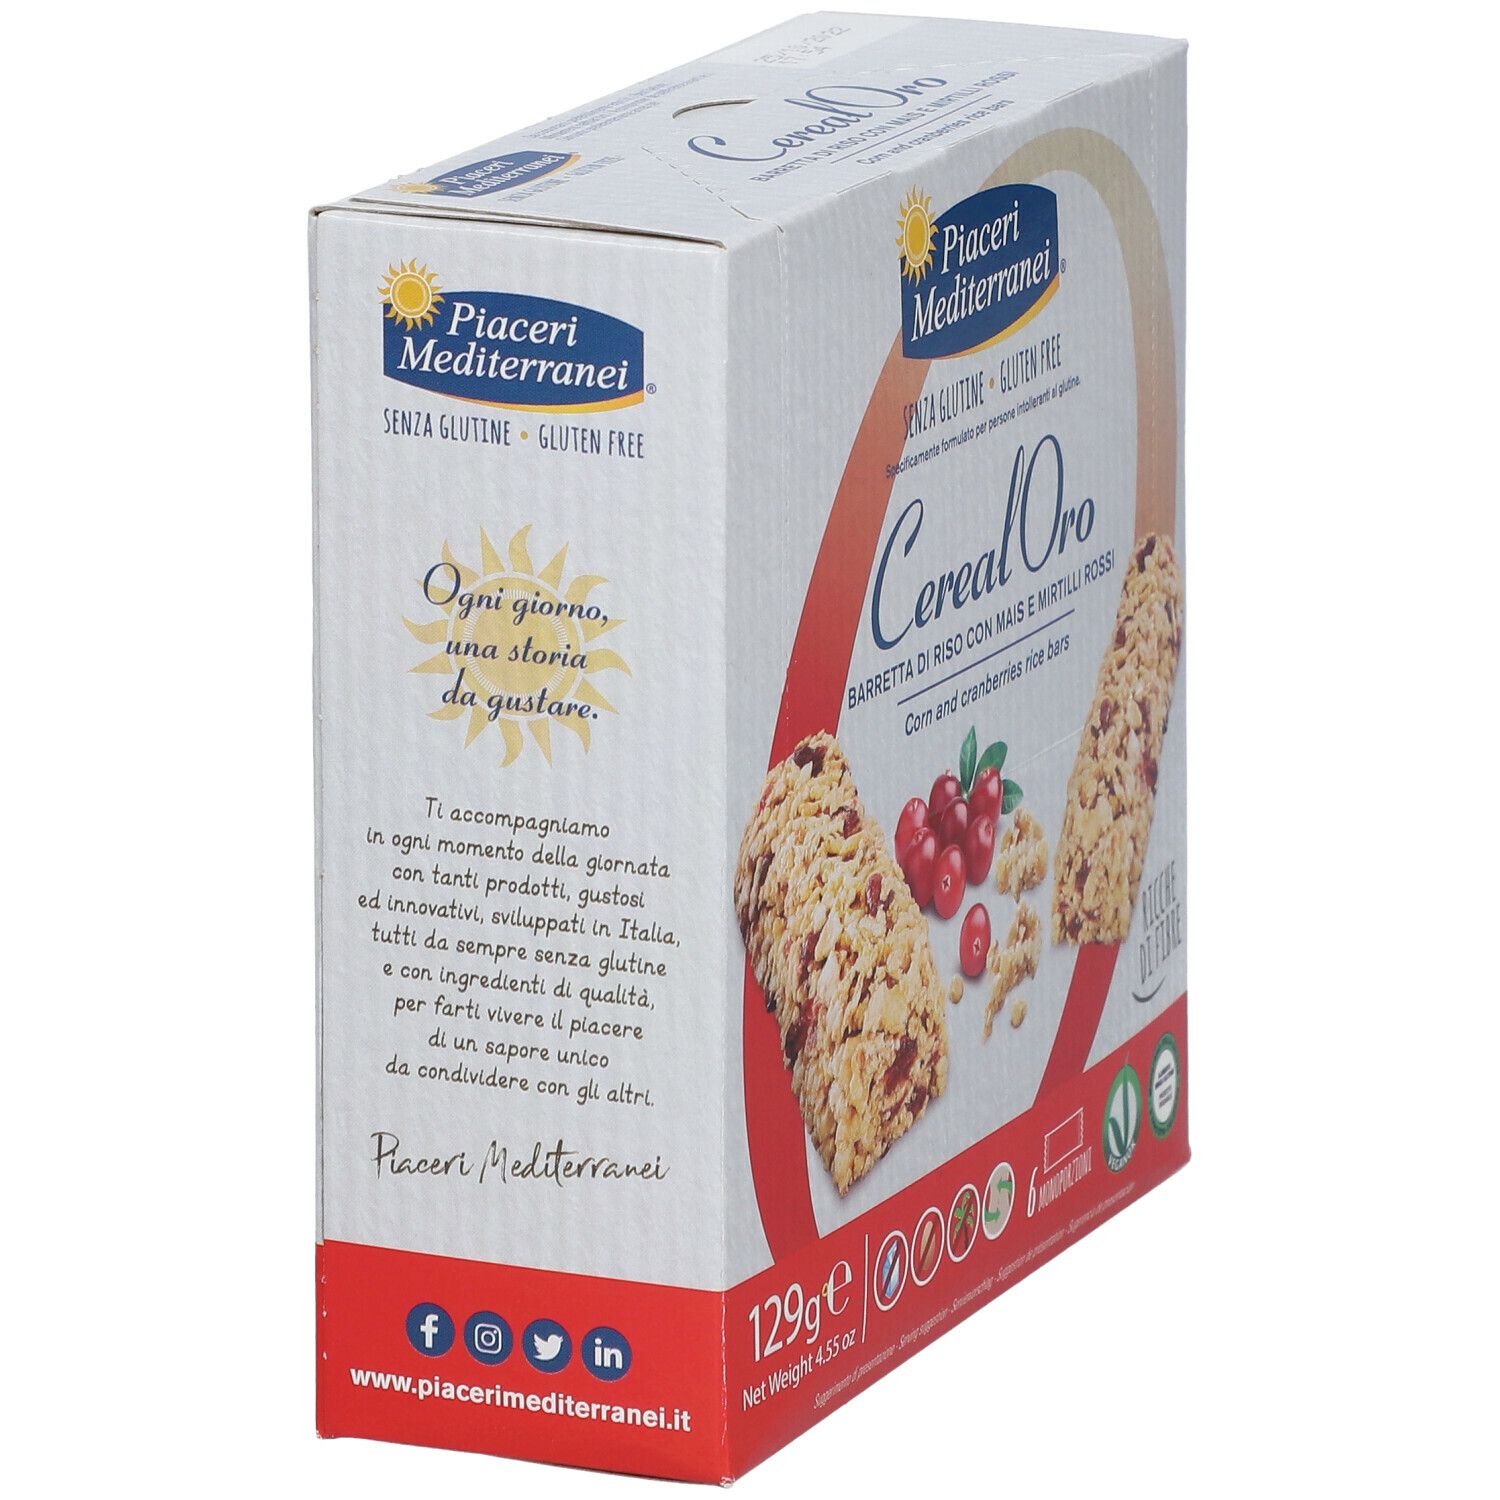 Piaceri Mediterranei® Cereal Oro Barretta di Riso con Mais e Mirtilli Rossi